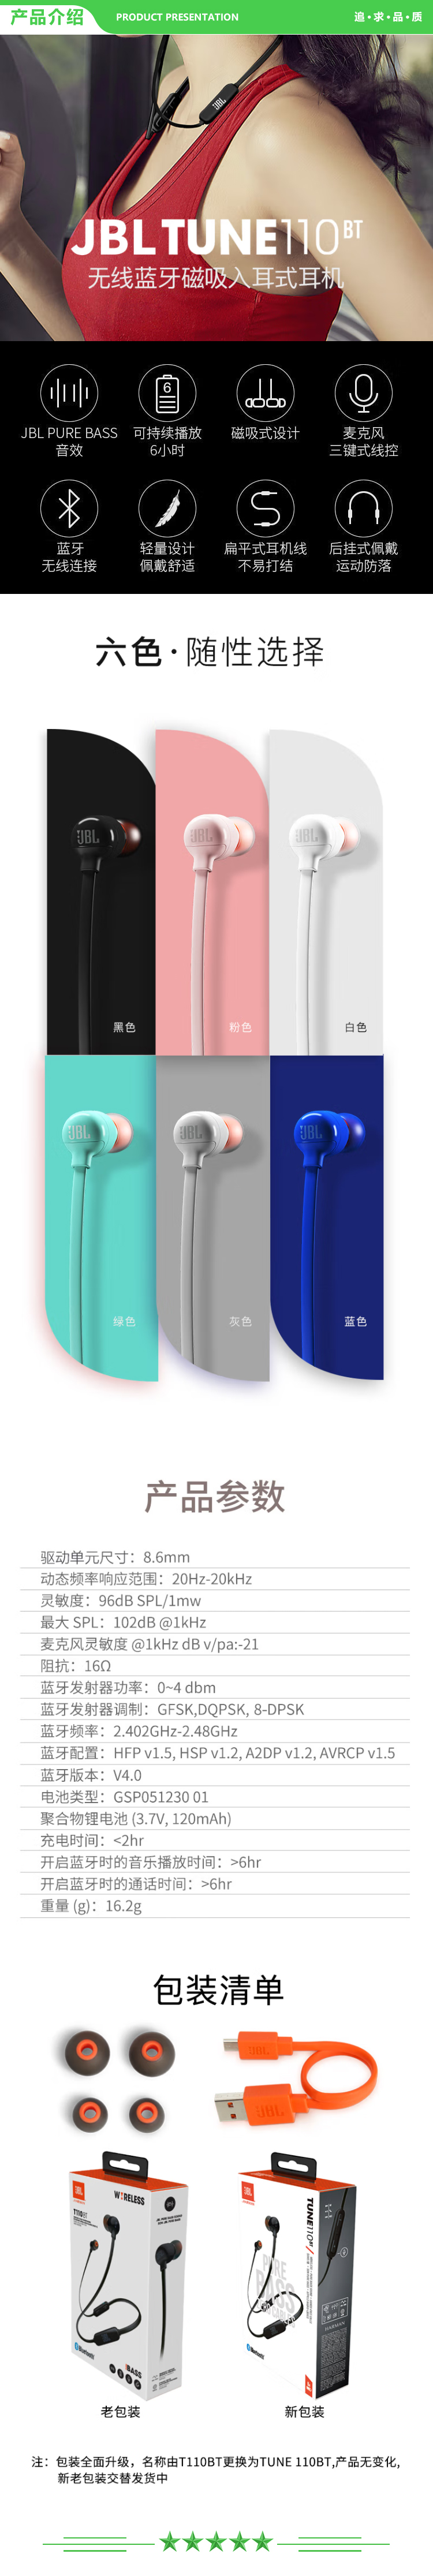 JBL TUNE 110BT 蓝牙无线耳机 运动音乐游戏耳机 苹果华为小米入耳式耳机 带麦可通话 粉色 .jpg